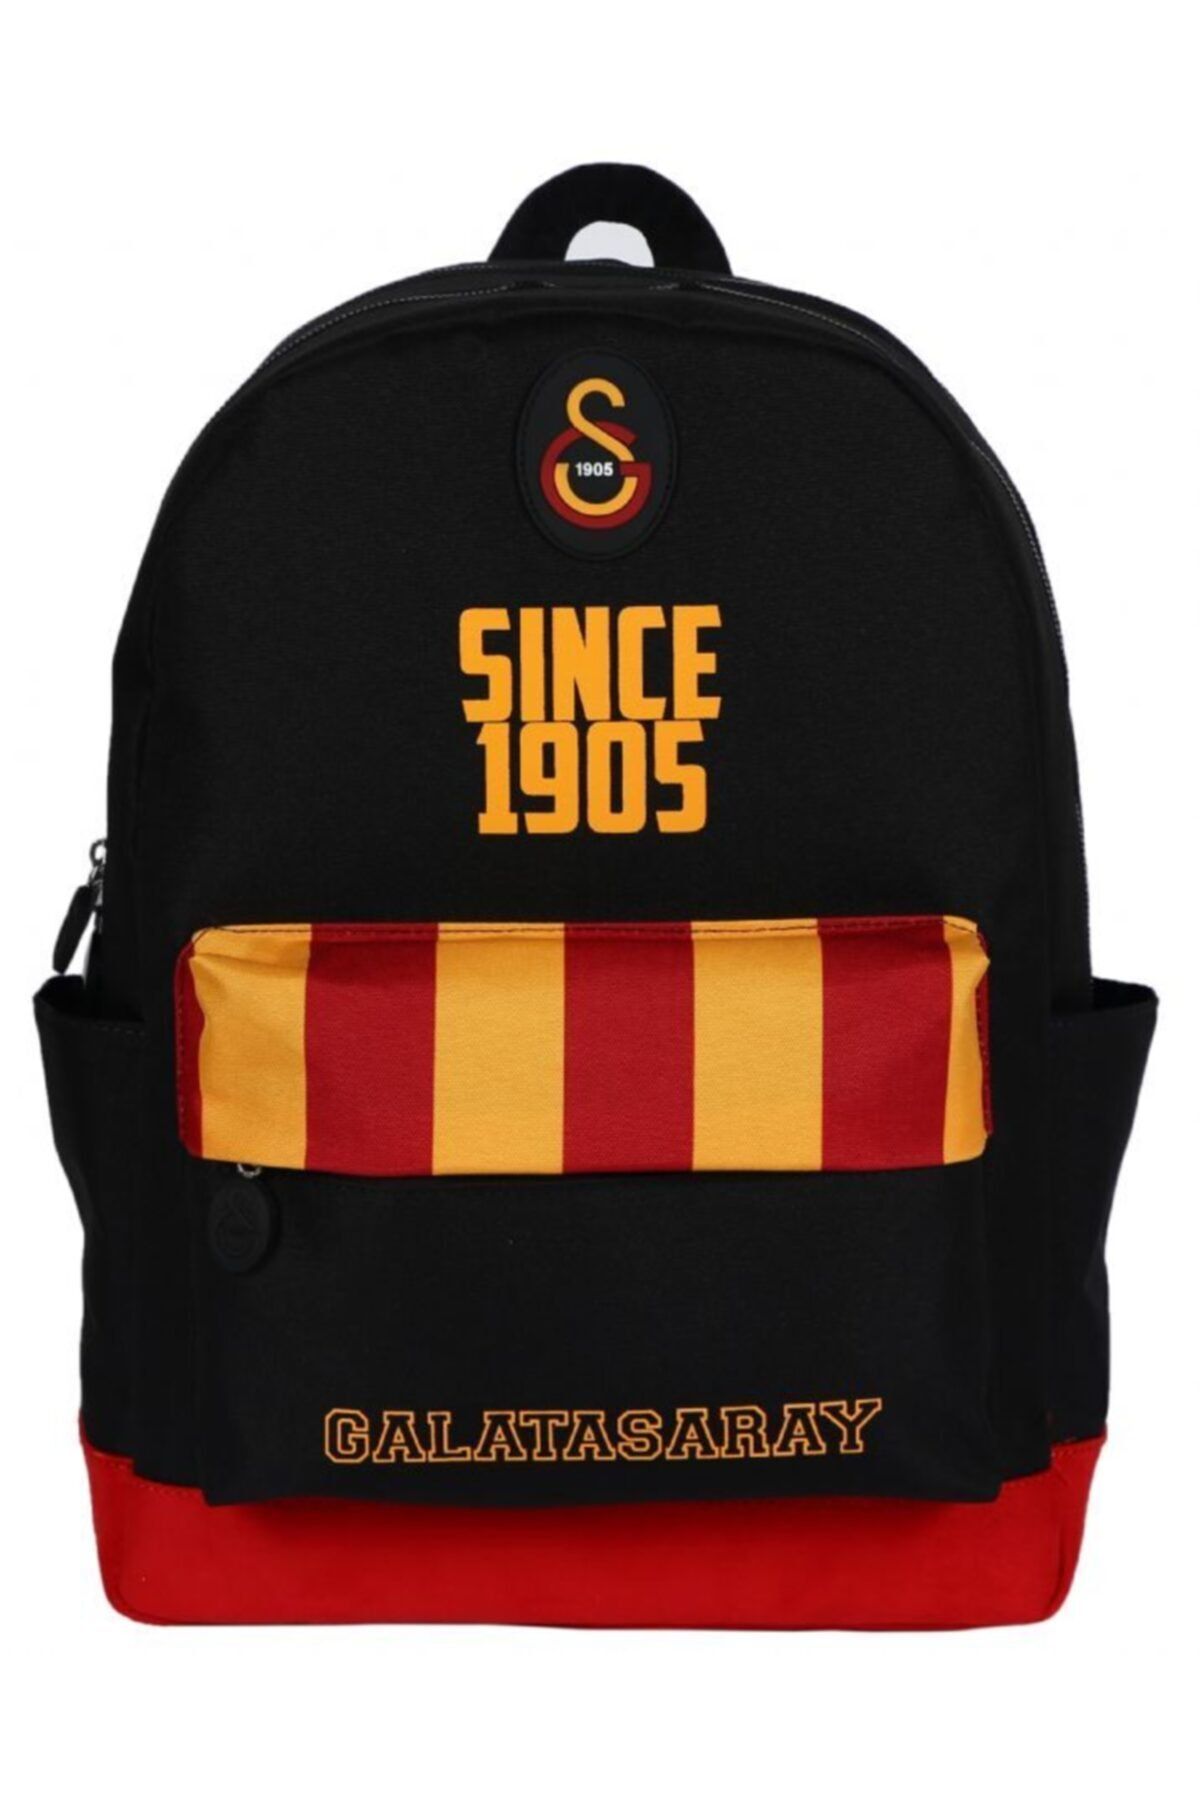 Galatasaray Since 1905 Dip Kırmızı Süet Siyah Okul Çantası